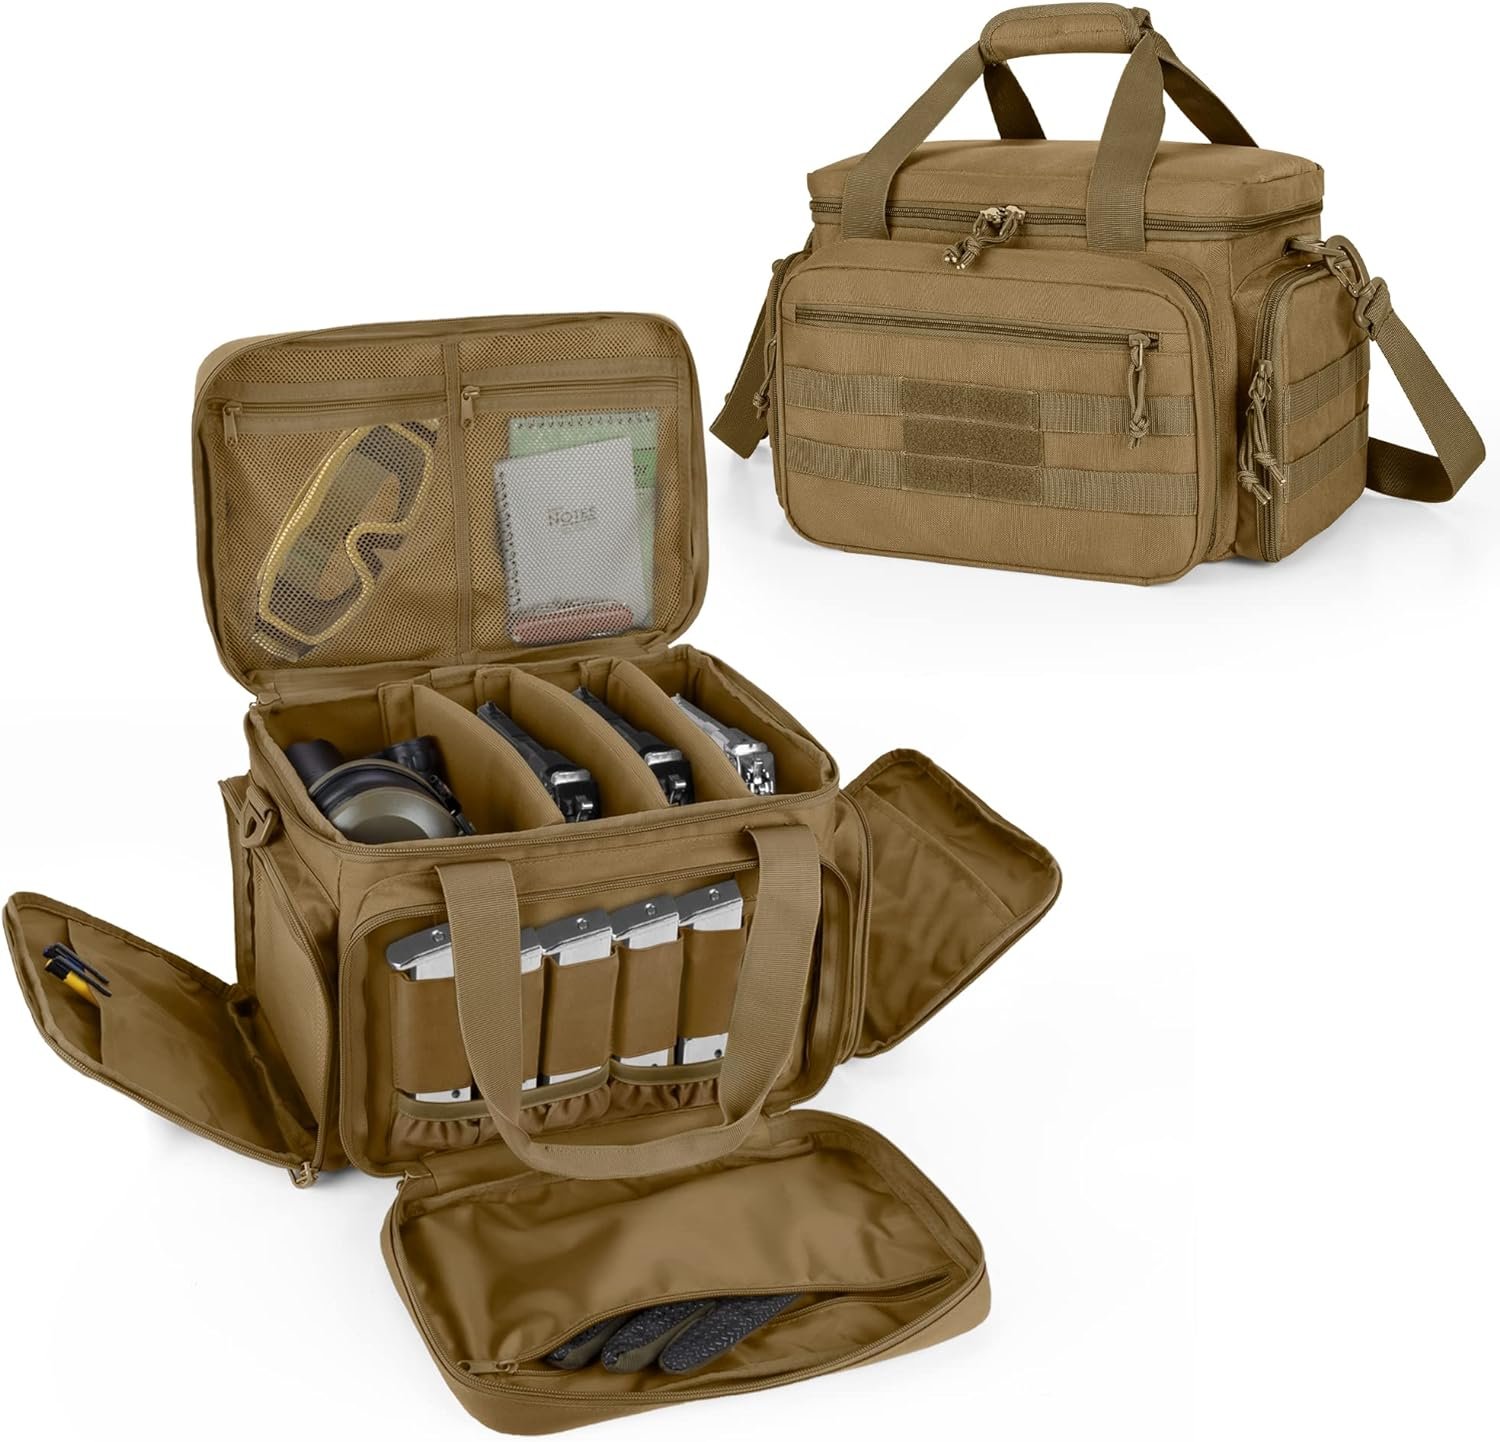 DSLEAF Tactical Gun Range Bag: Honest Review